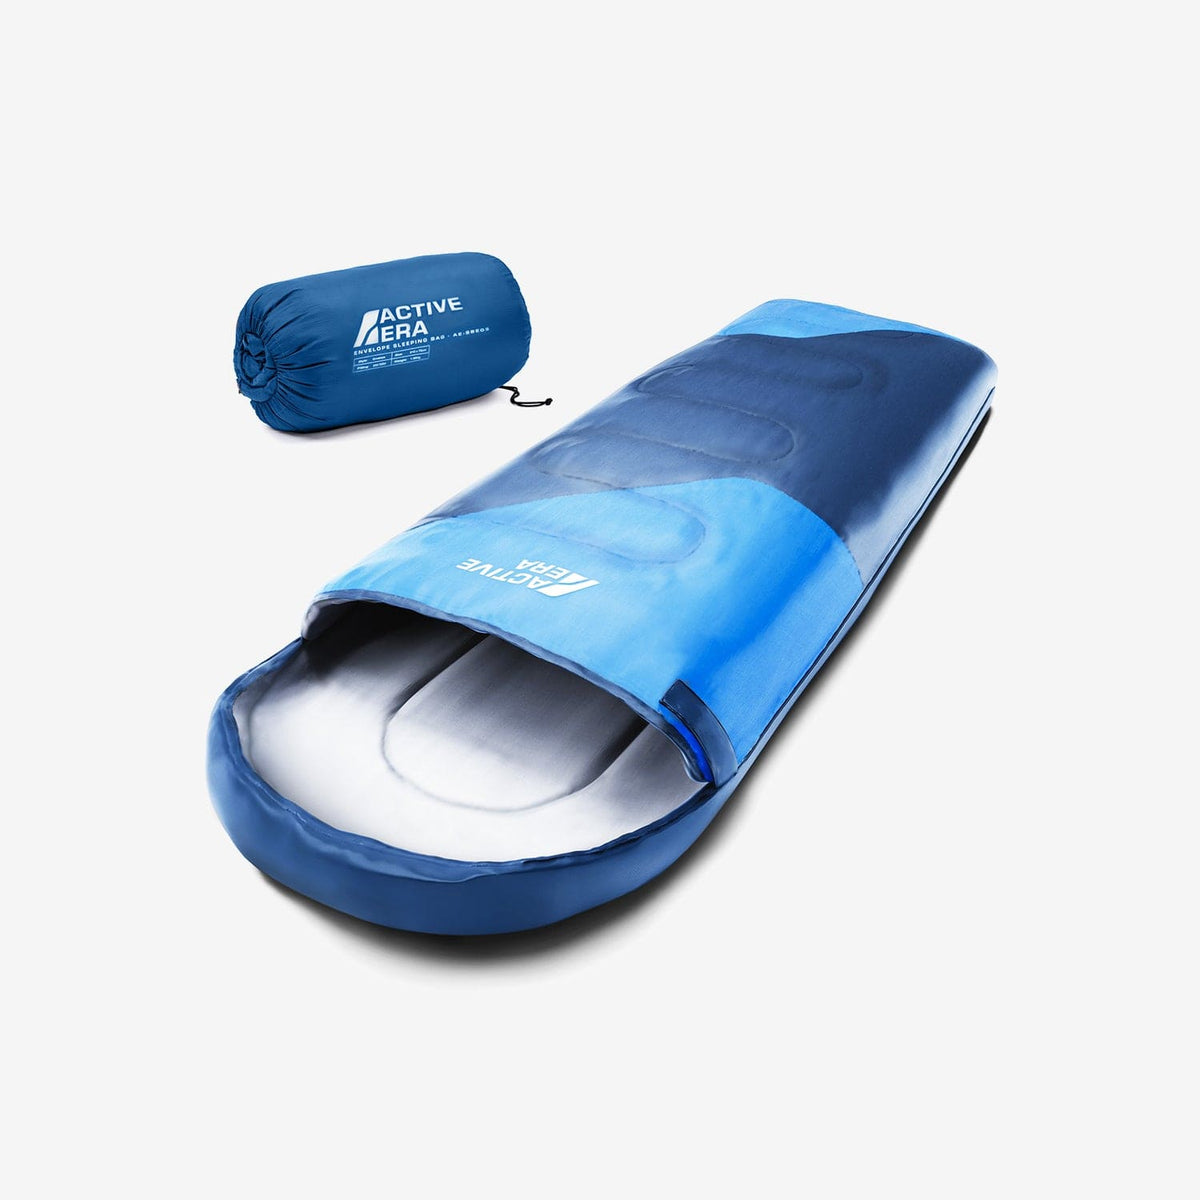 Premium wasserdichter, leichter Schlafsack – Blau – 3–4 Jahreszeiten